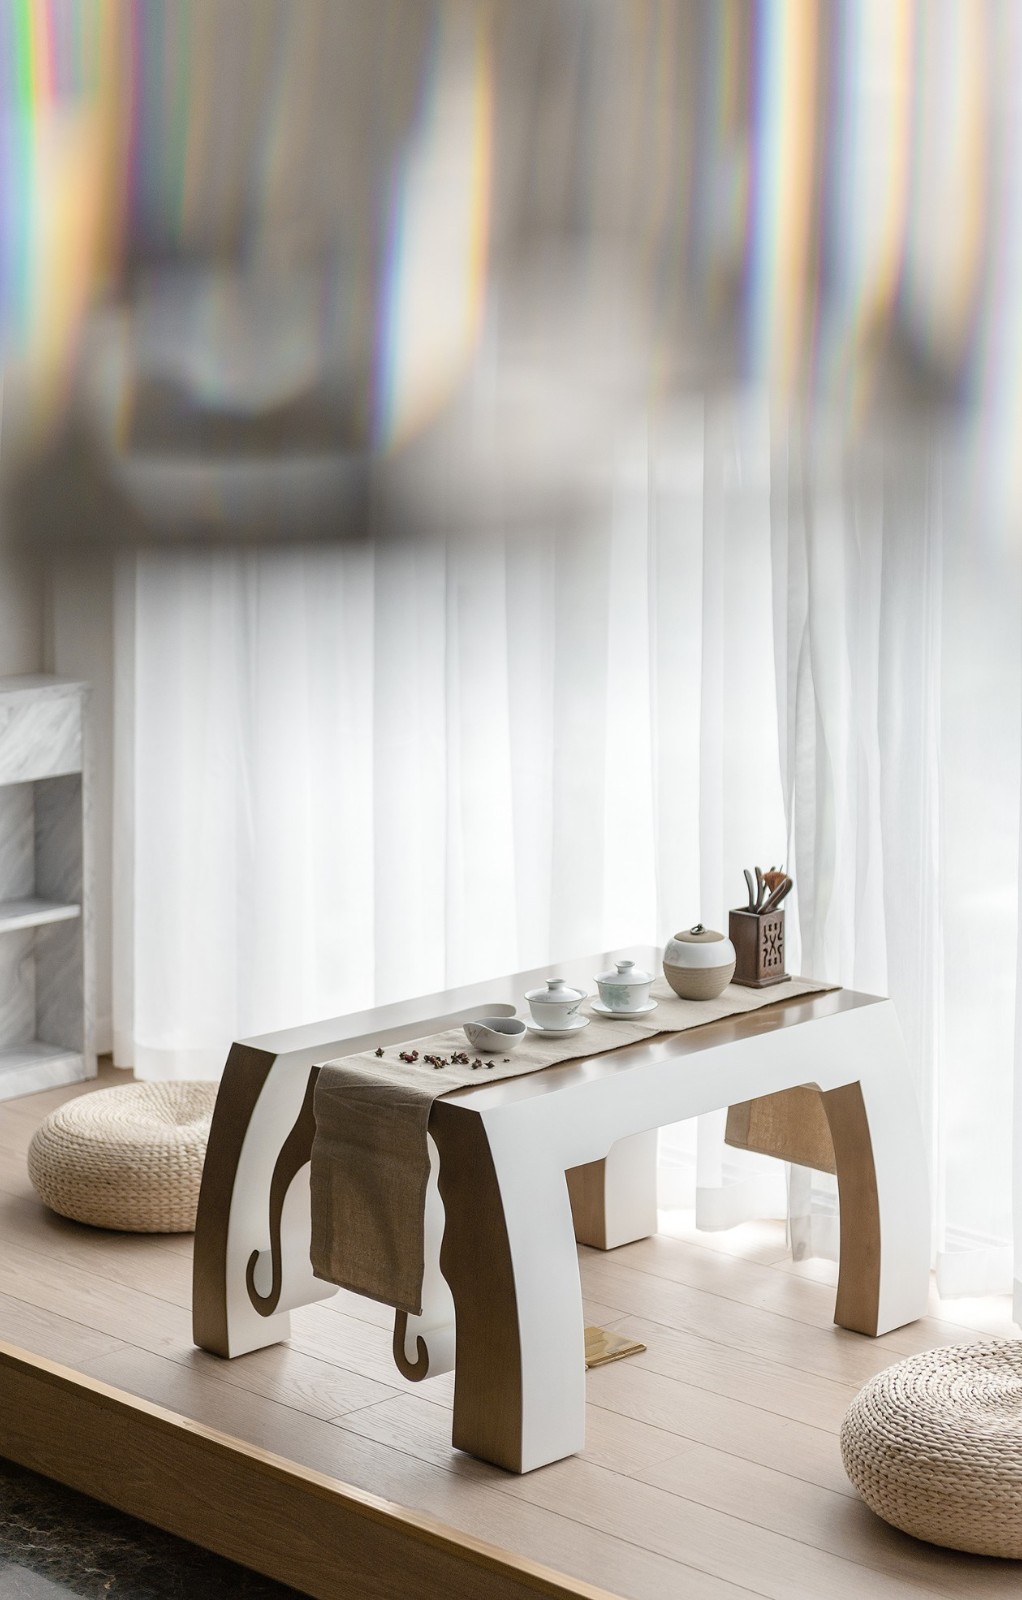 歐式輕奢風格家裝設計室內裝修效果圖-茶桌